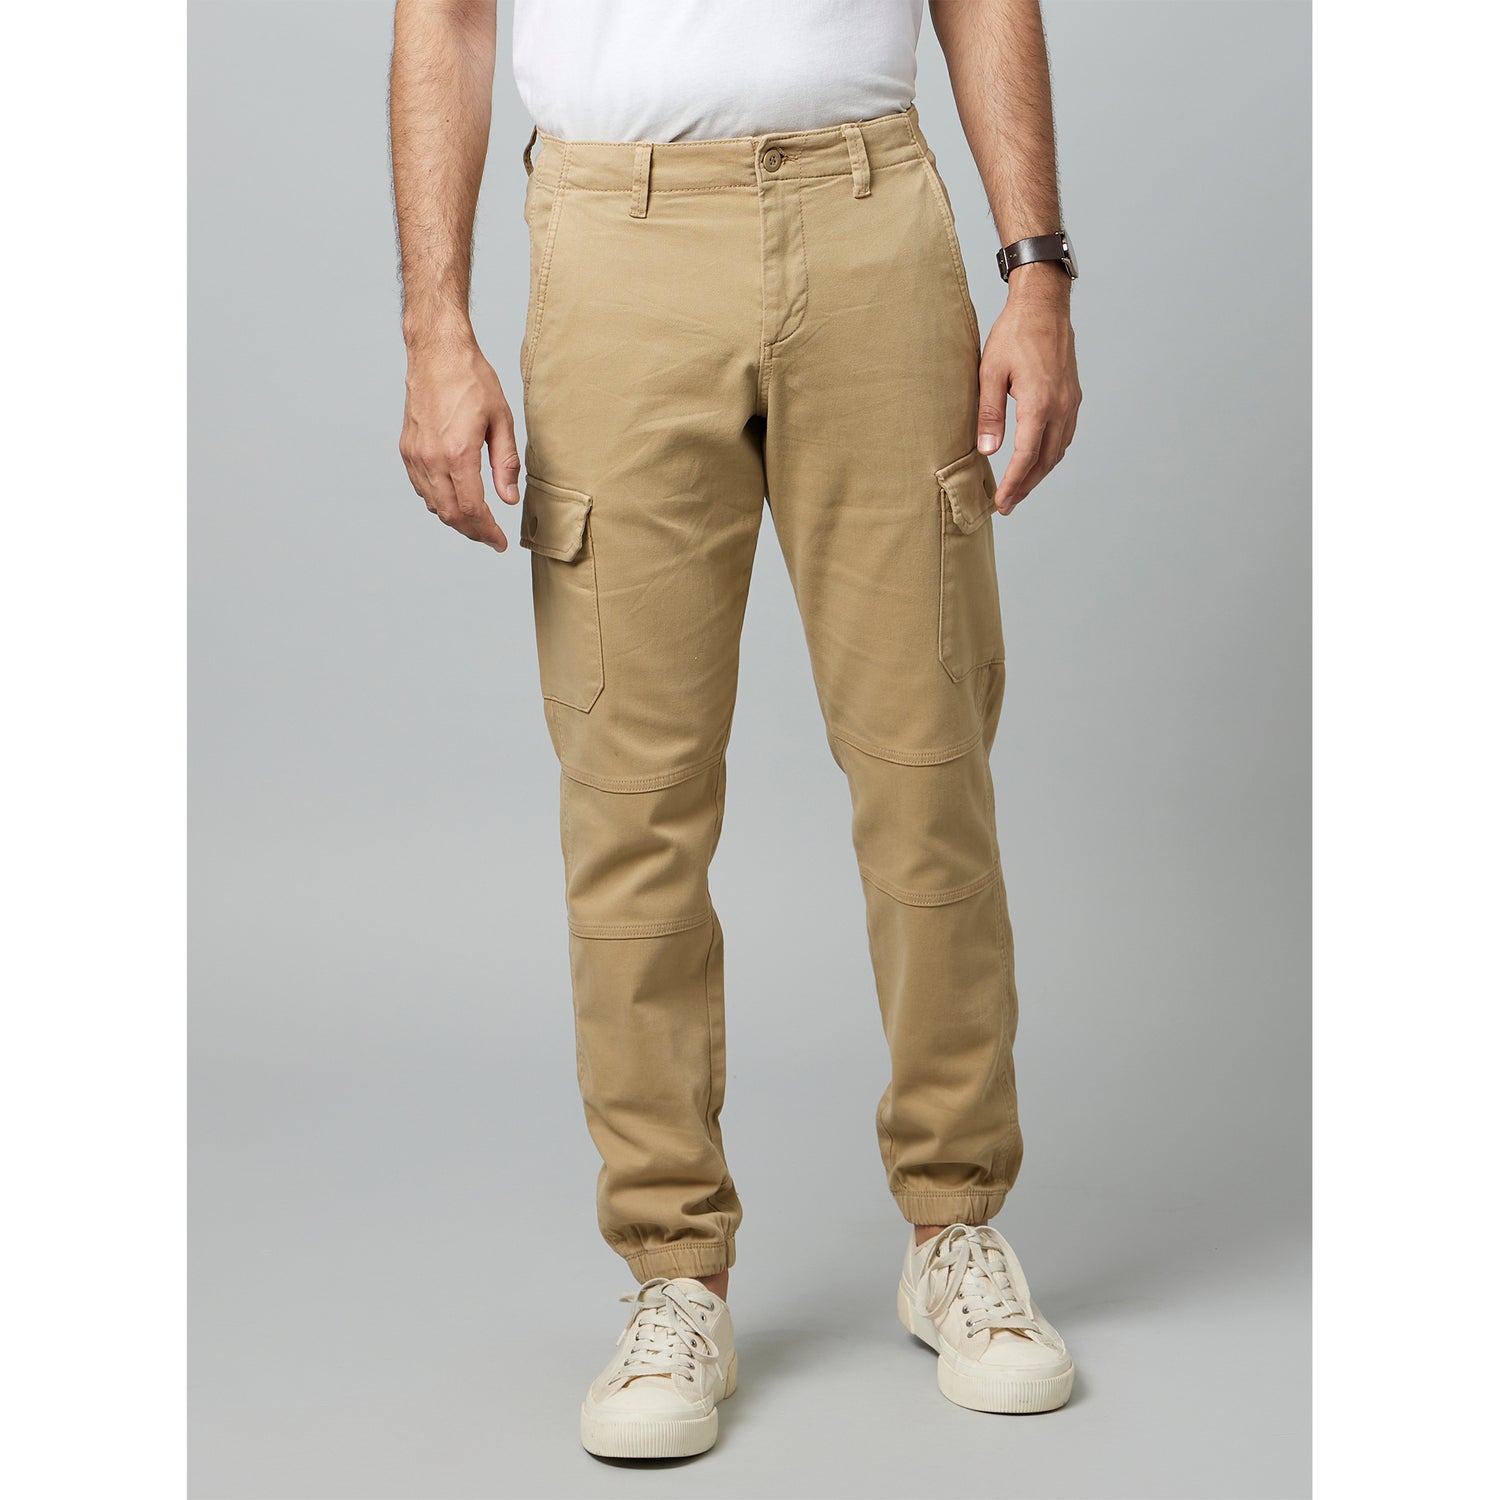 Khaki Solid Cotton Cargo Trouser (DOLYTE)